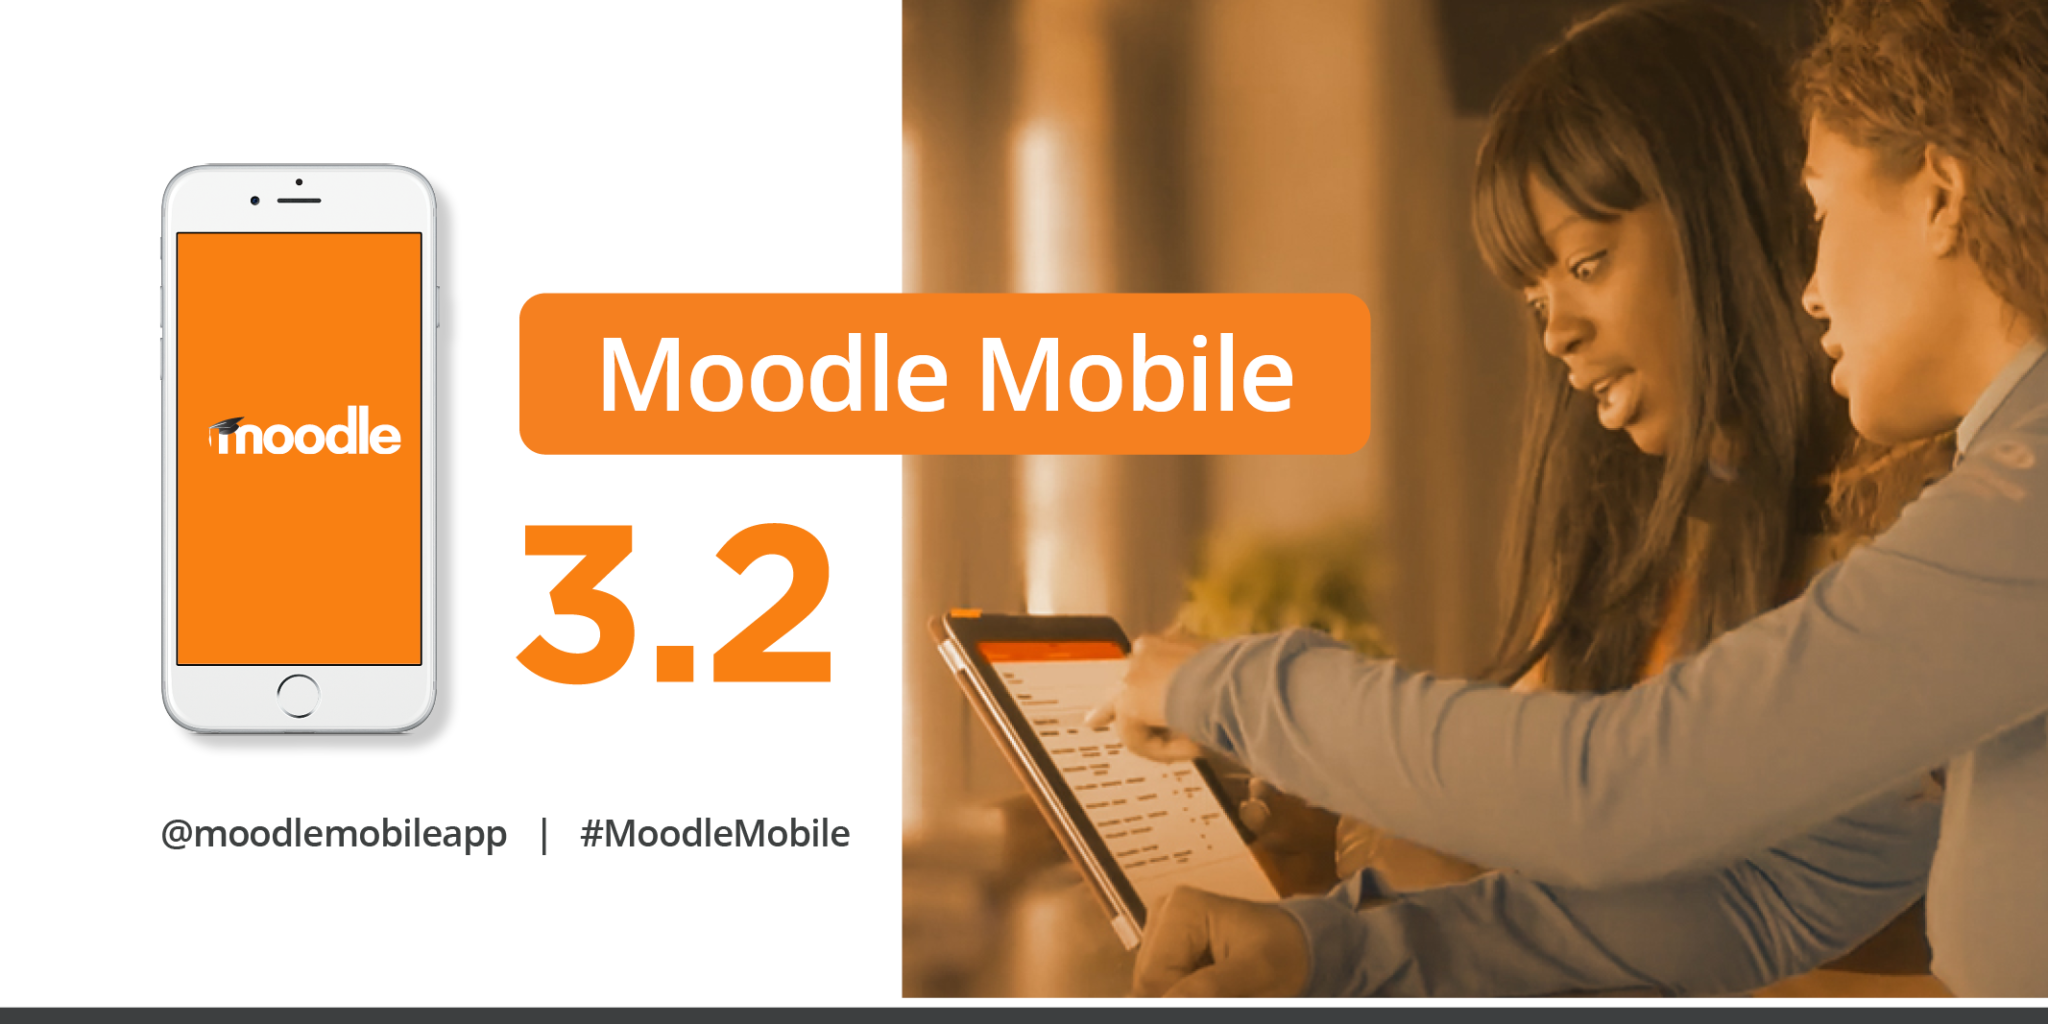 O Moodle Mobile 3.2 já está disponível! Imagem